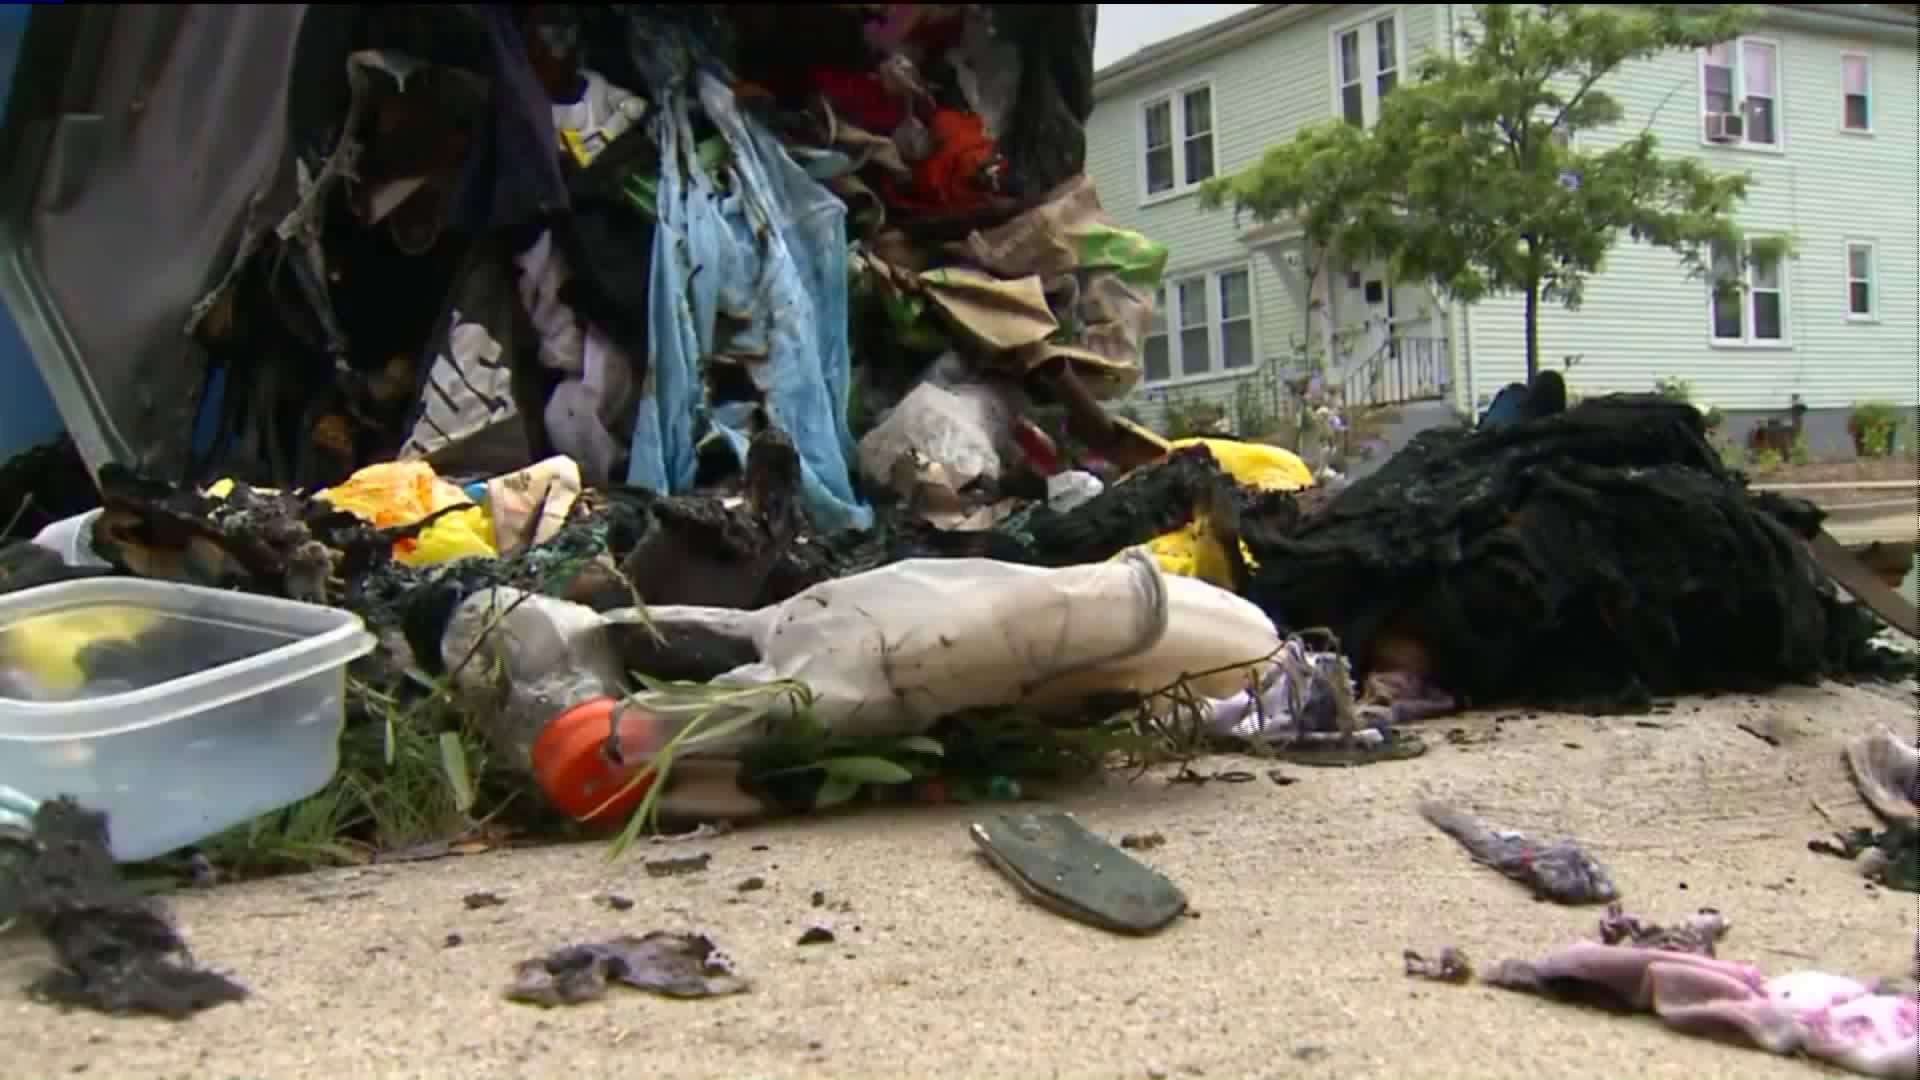 West Hartford trash bins set on fire